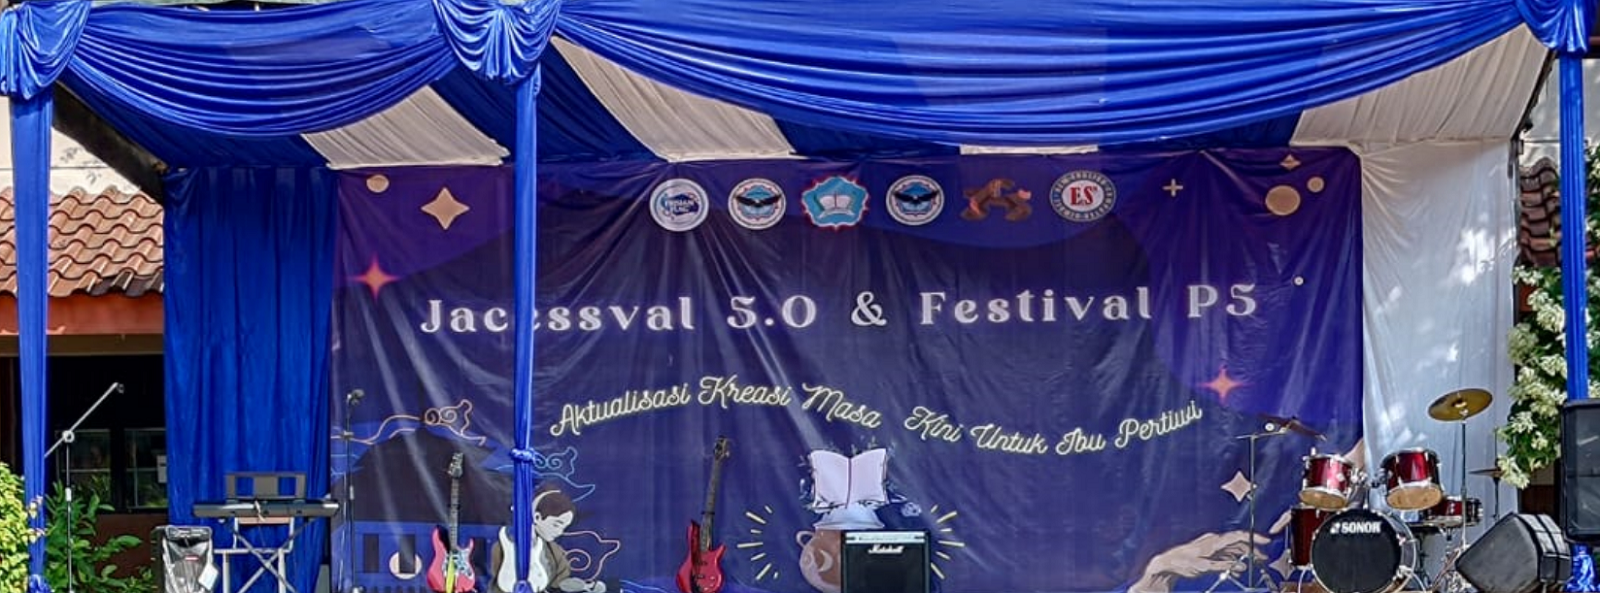 Jacessval 5.0 dan Festival P5 2023